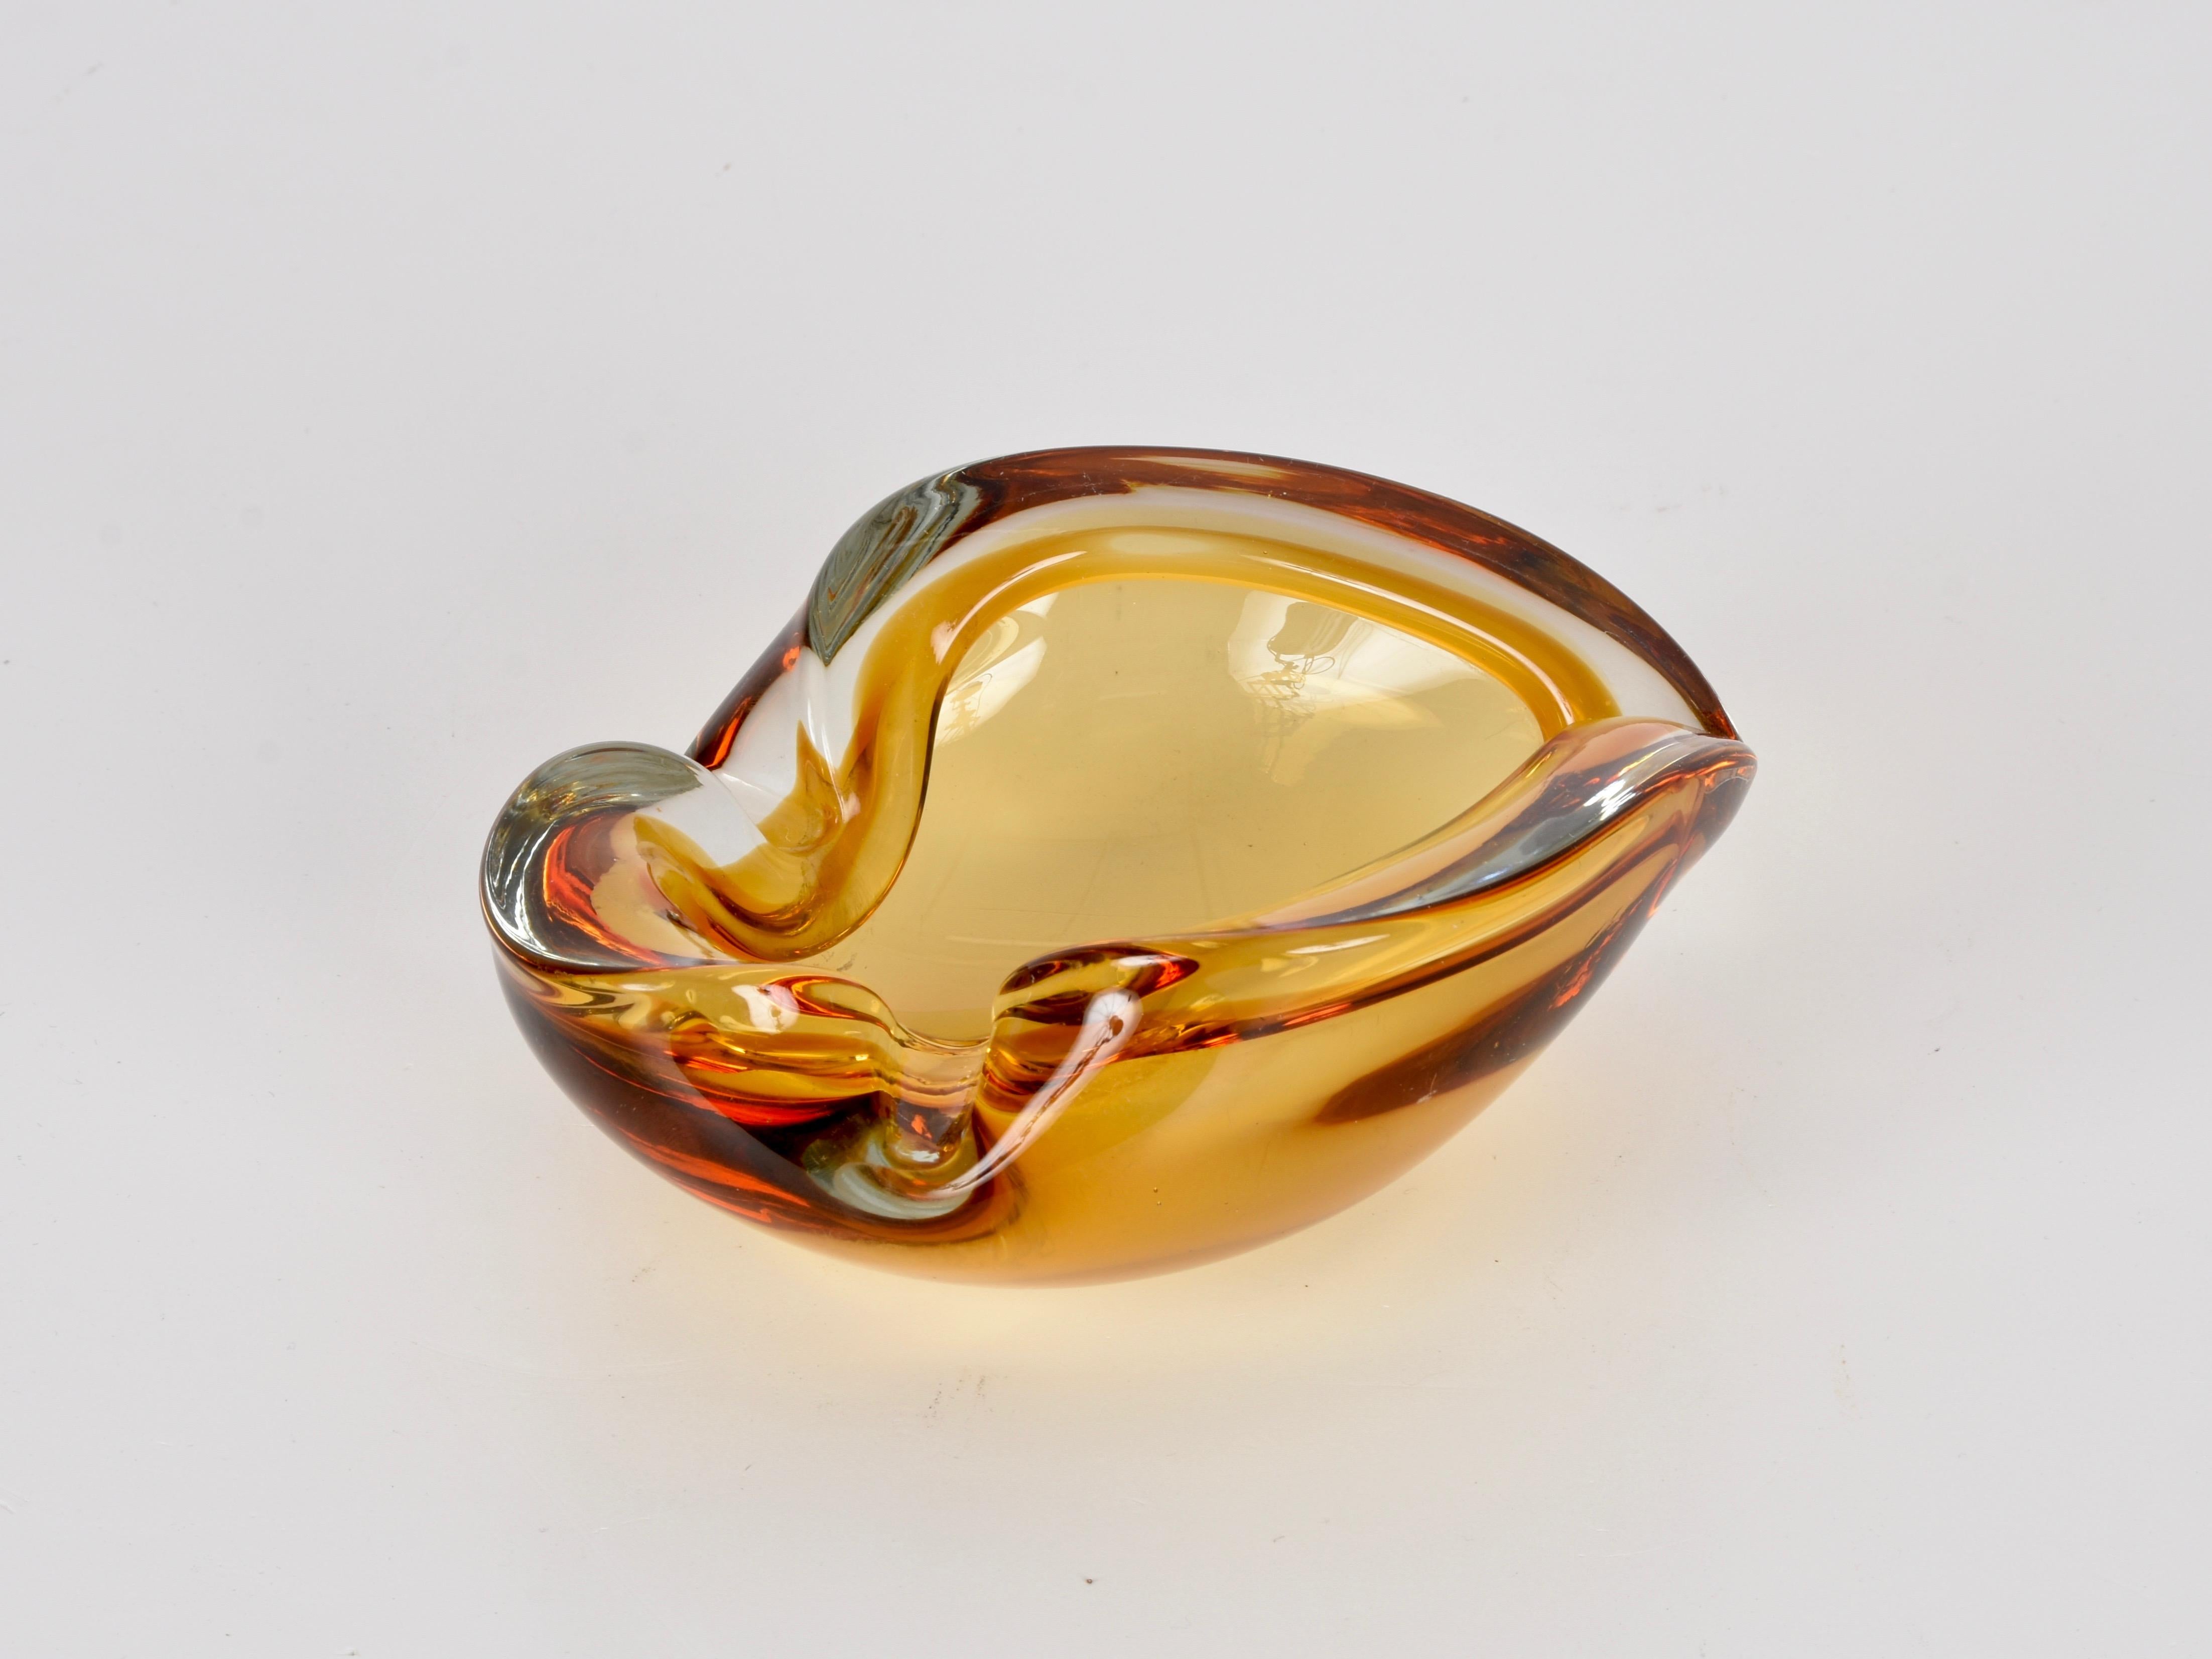 Prächtiges Murano-Kunstglas aus der Mitte des Jahrhunderts mit erstaunlichen Farbnuancen, die von Dunkelrot über Bernstein bis hin zu hellem Orange und Kristall reichen. Dieses Stück wurde in den 1960er Jahren in Italien hergestellt.

Dieses